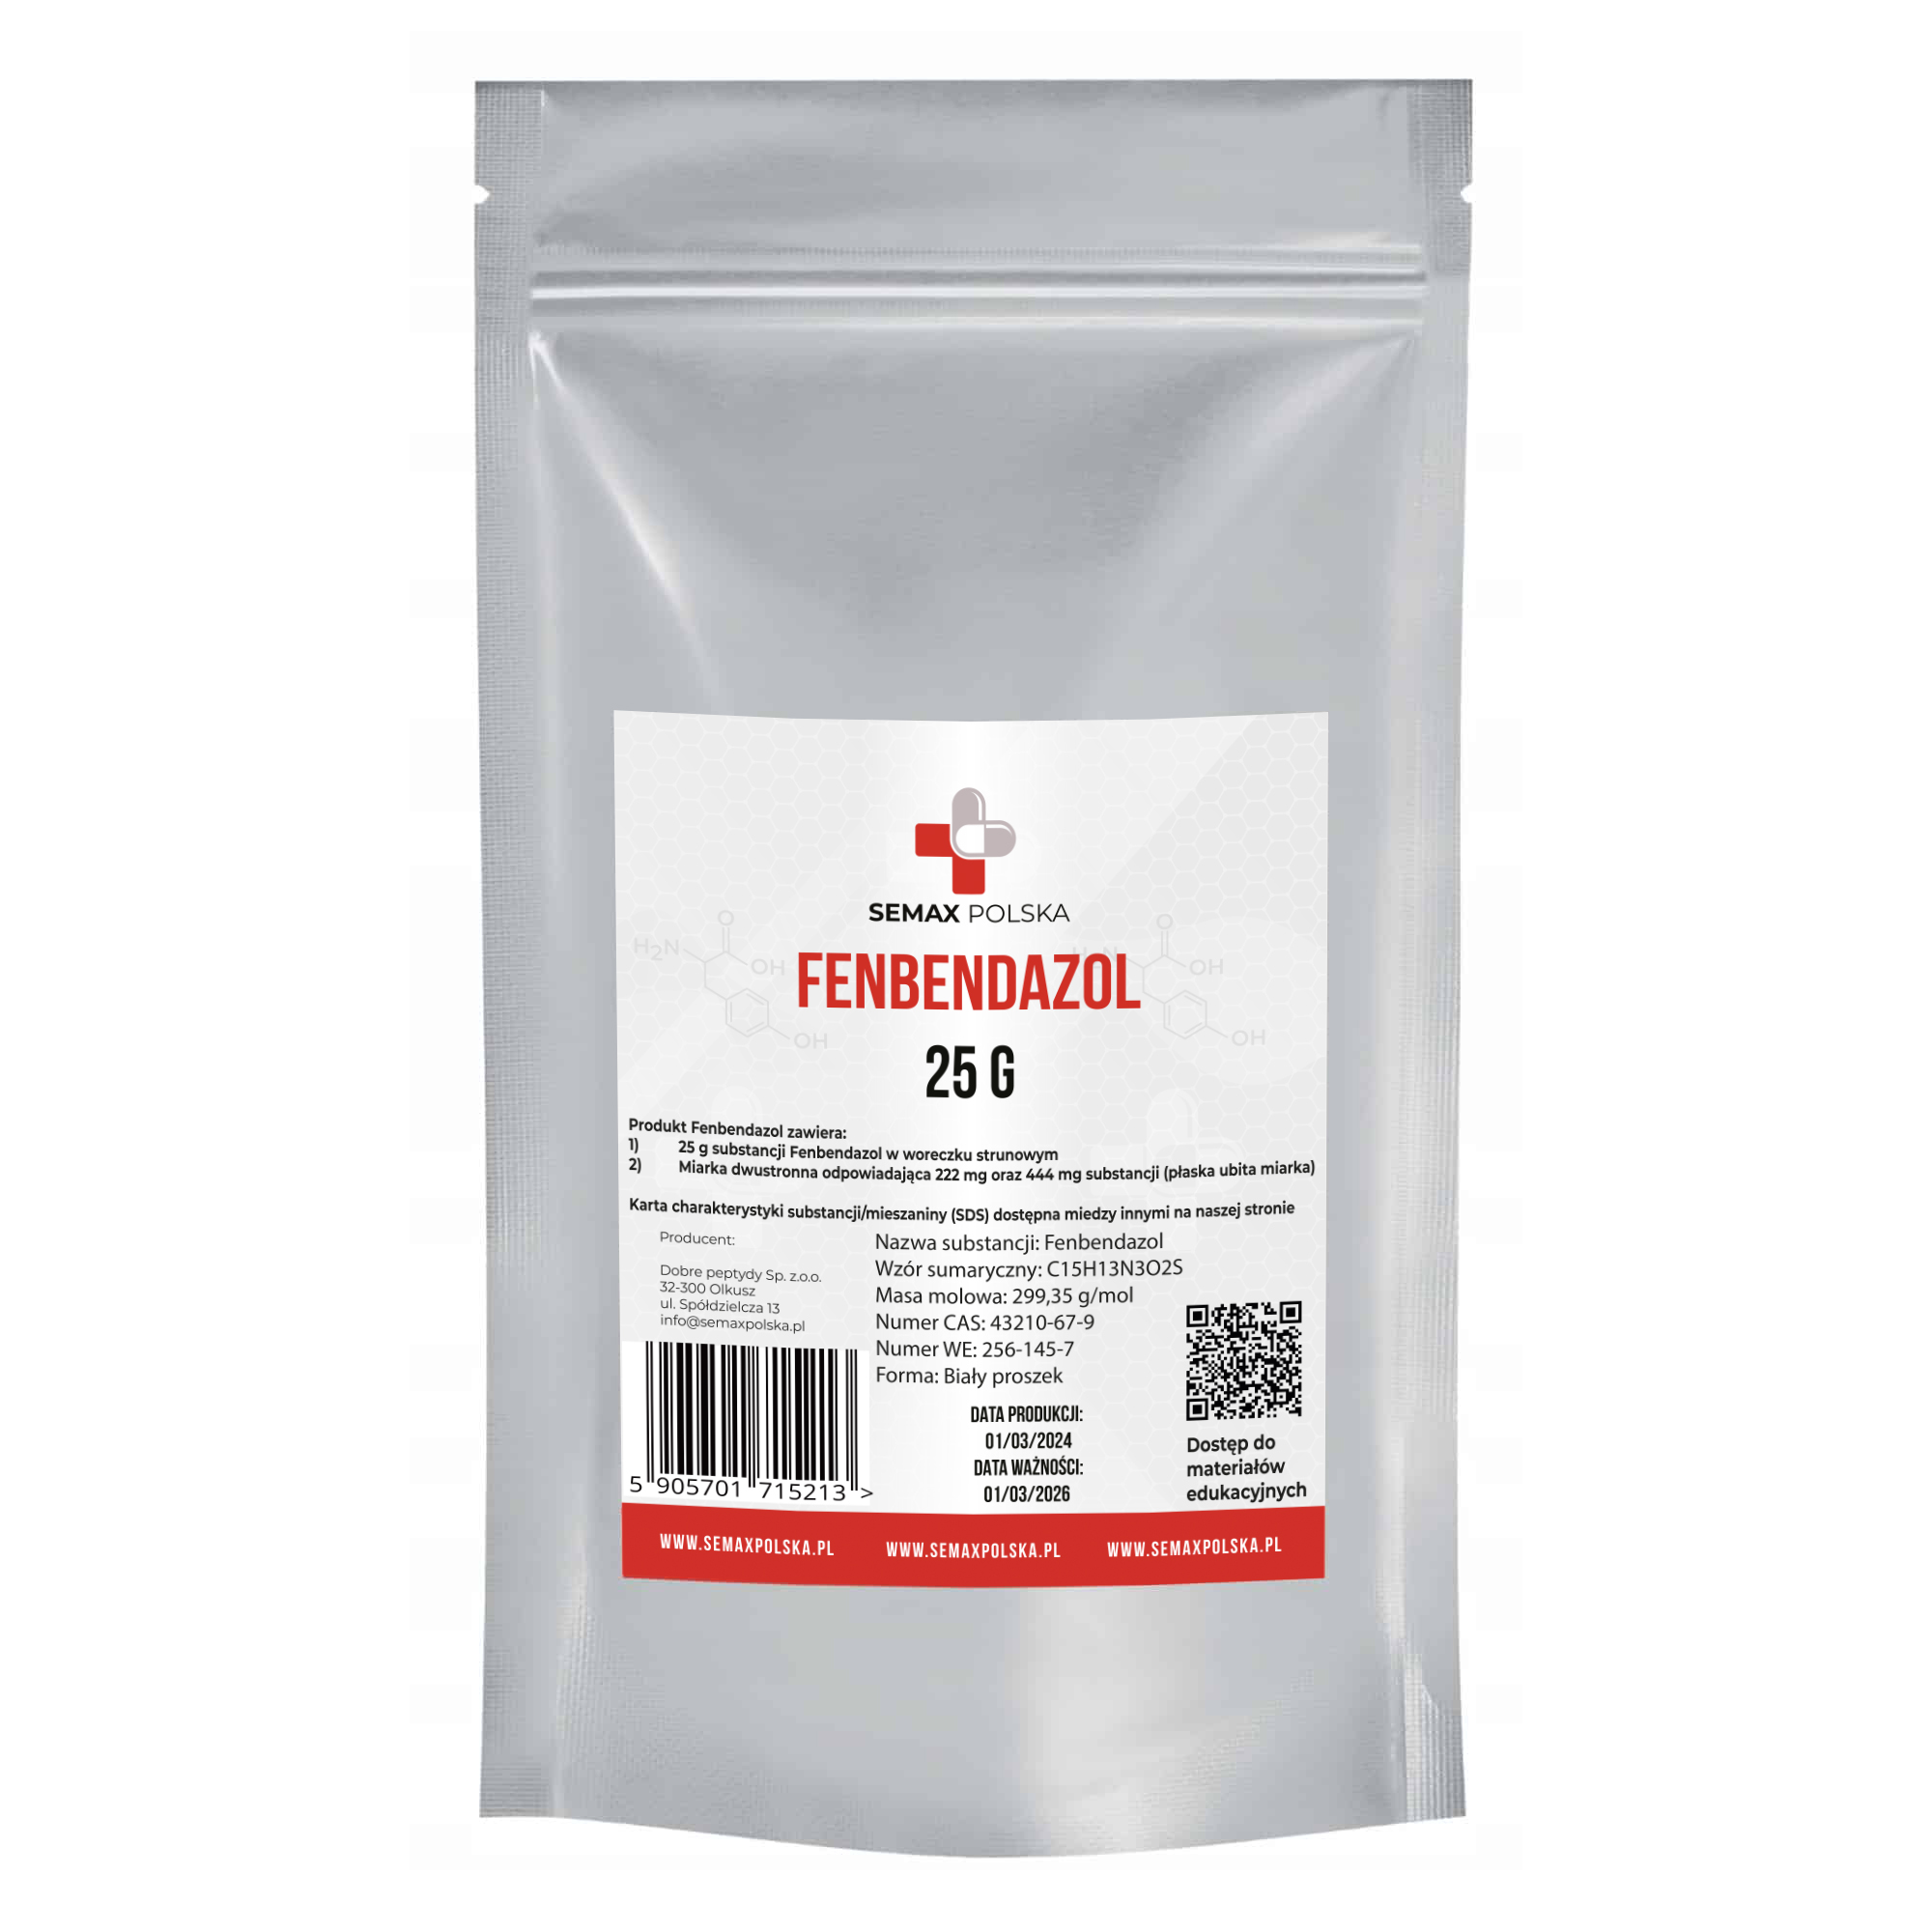 Фенбендазол 25 g